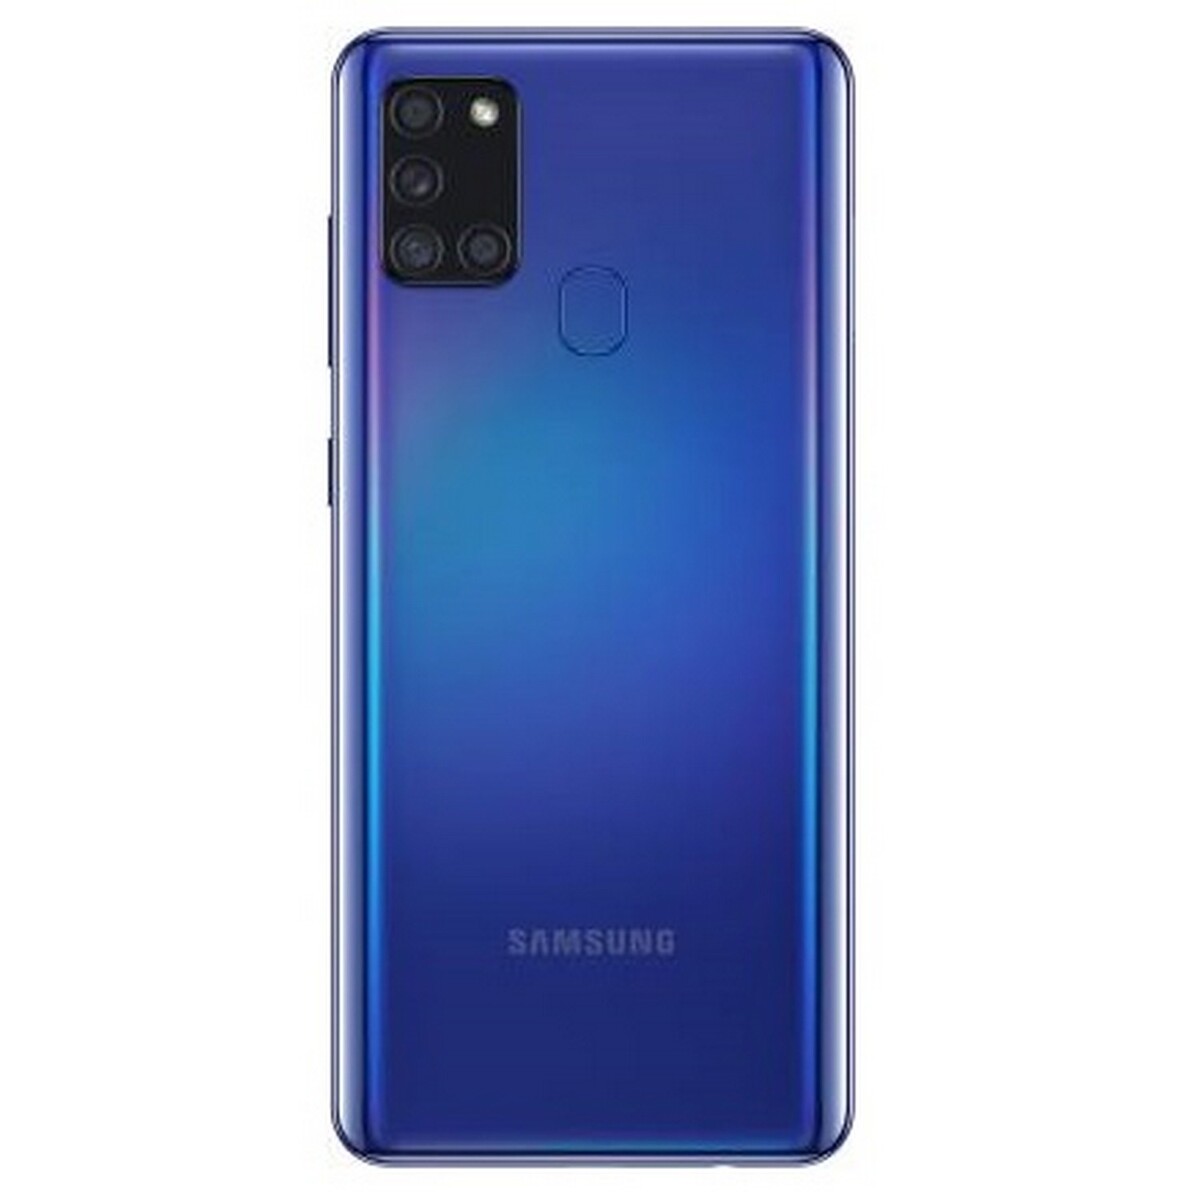 Samsung A21s 6GB /64GB  Blue